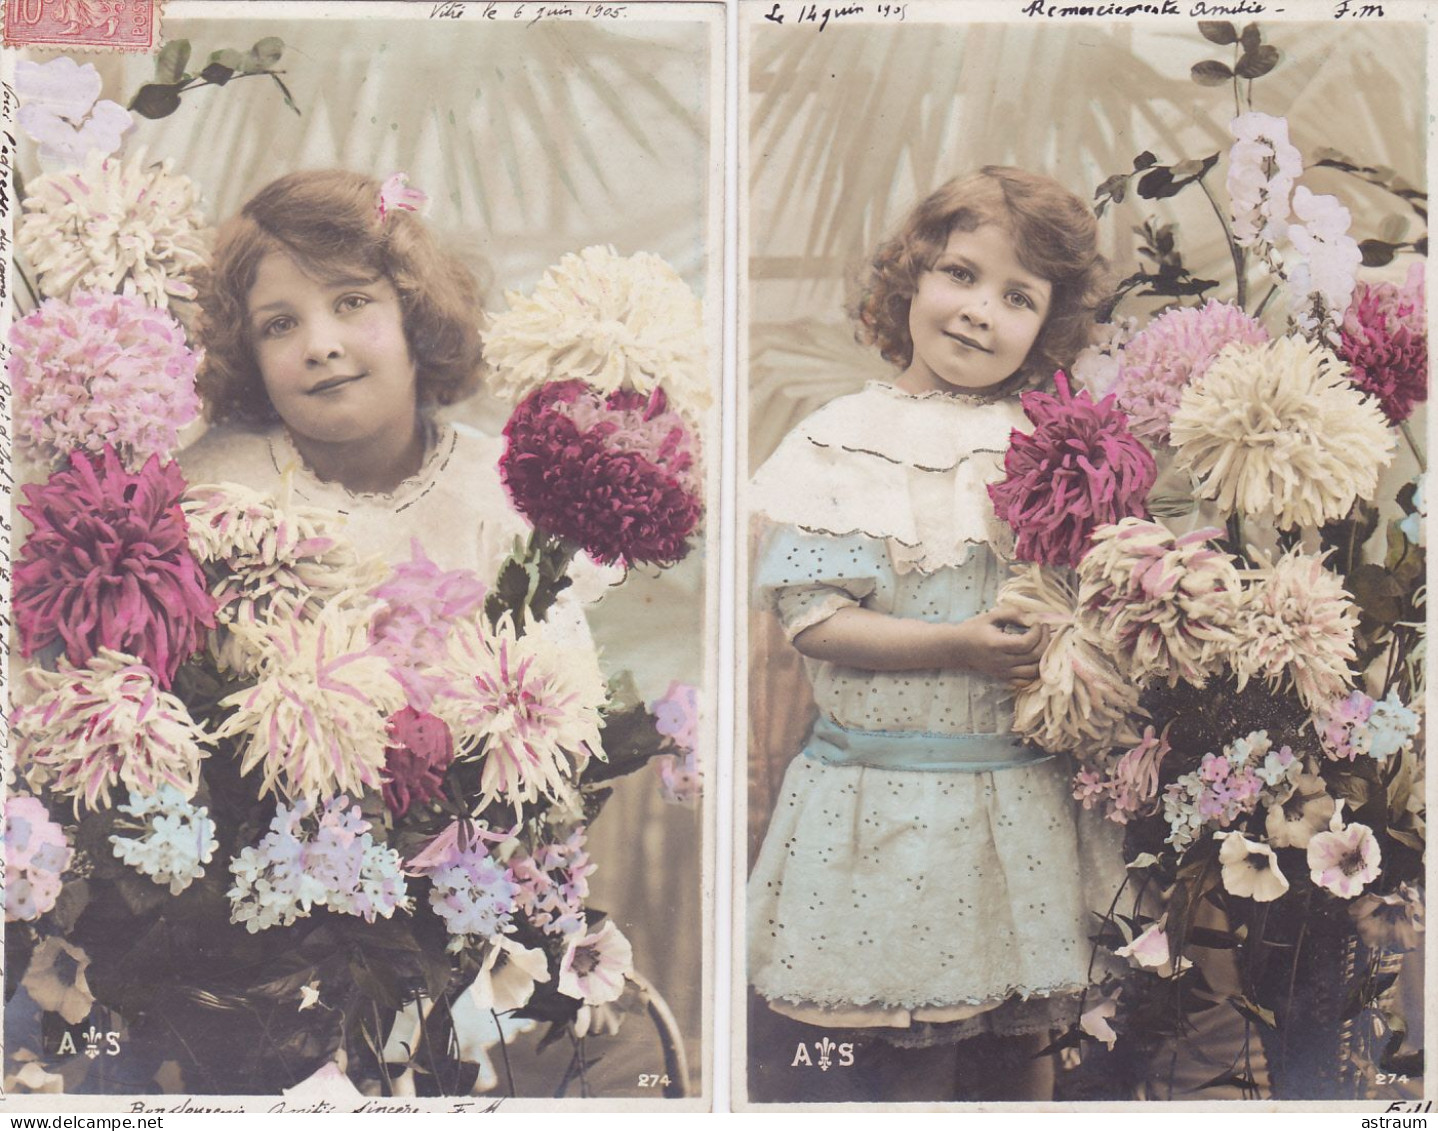 Serie Complete 5 Cpa - Enfant - Petite Fille - Fleur Dalhia - Edi A S 274 - Scenes & Landscapes